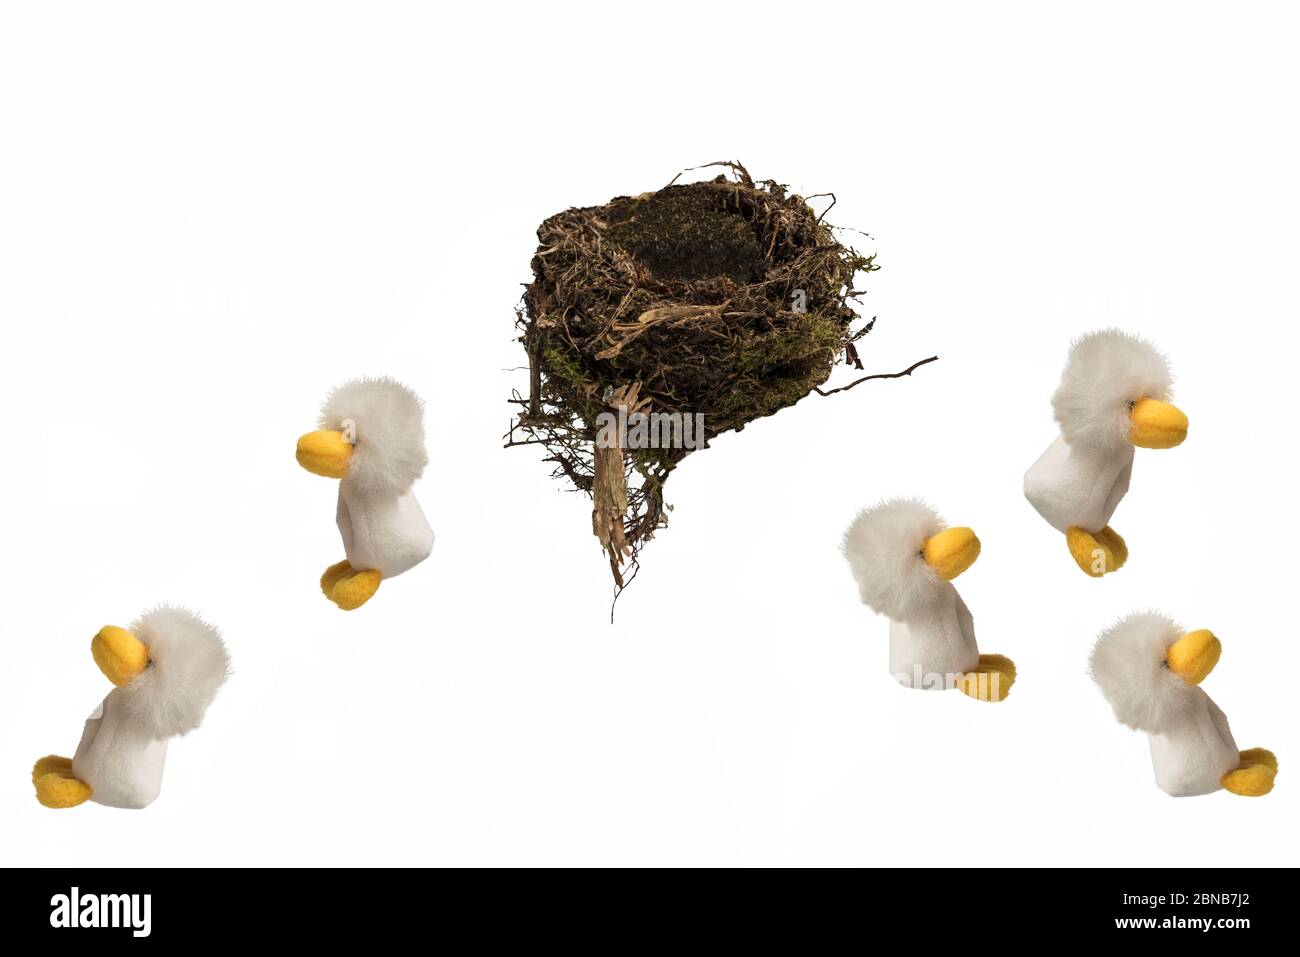 Cinque pulcini peluche saltano da nido di uccelli reali con Hooray sopra, su sfondo bianco. Concept; fuggire dal nido, uscire a casa, nidi vuoti. Foto Stock